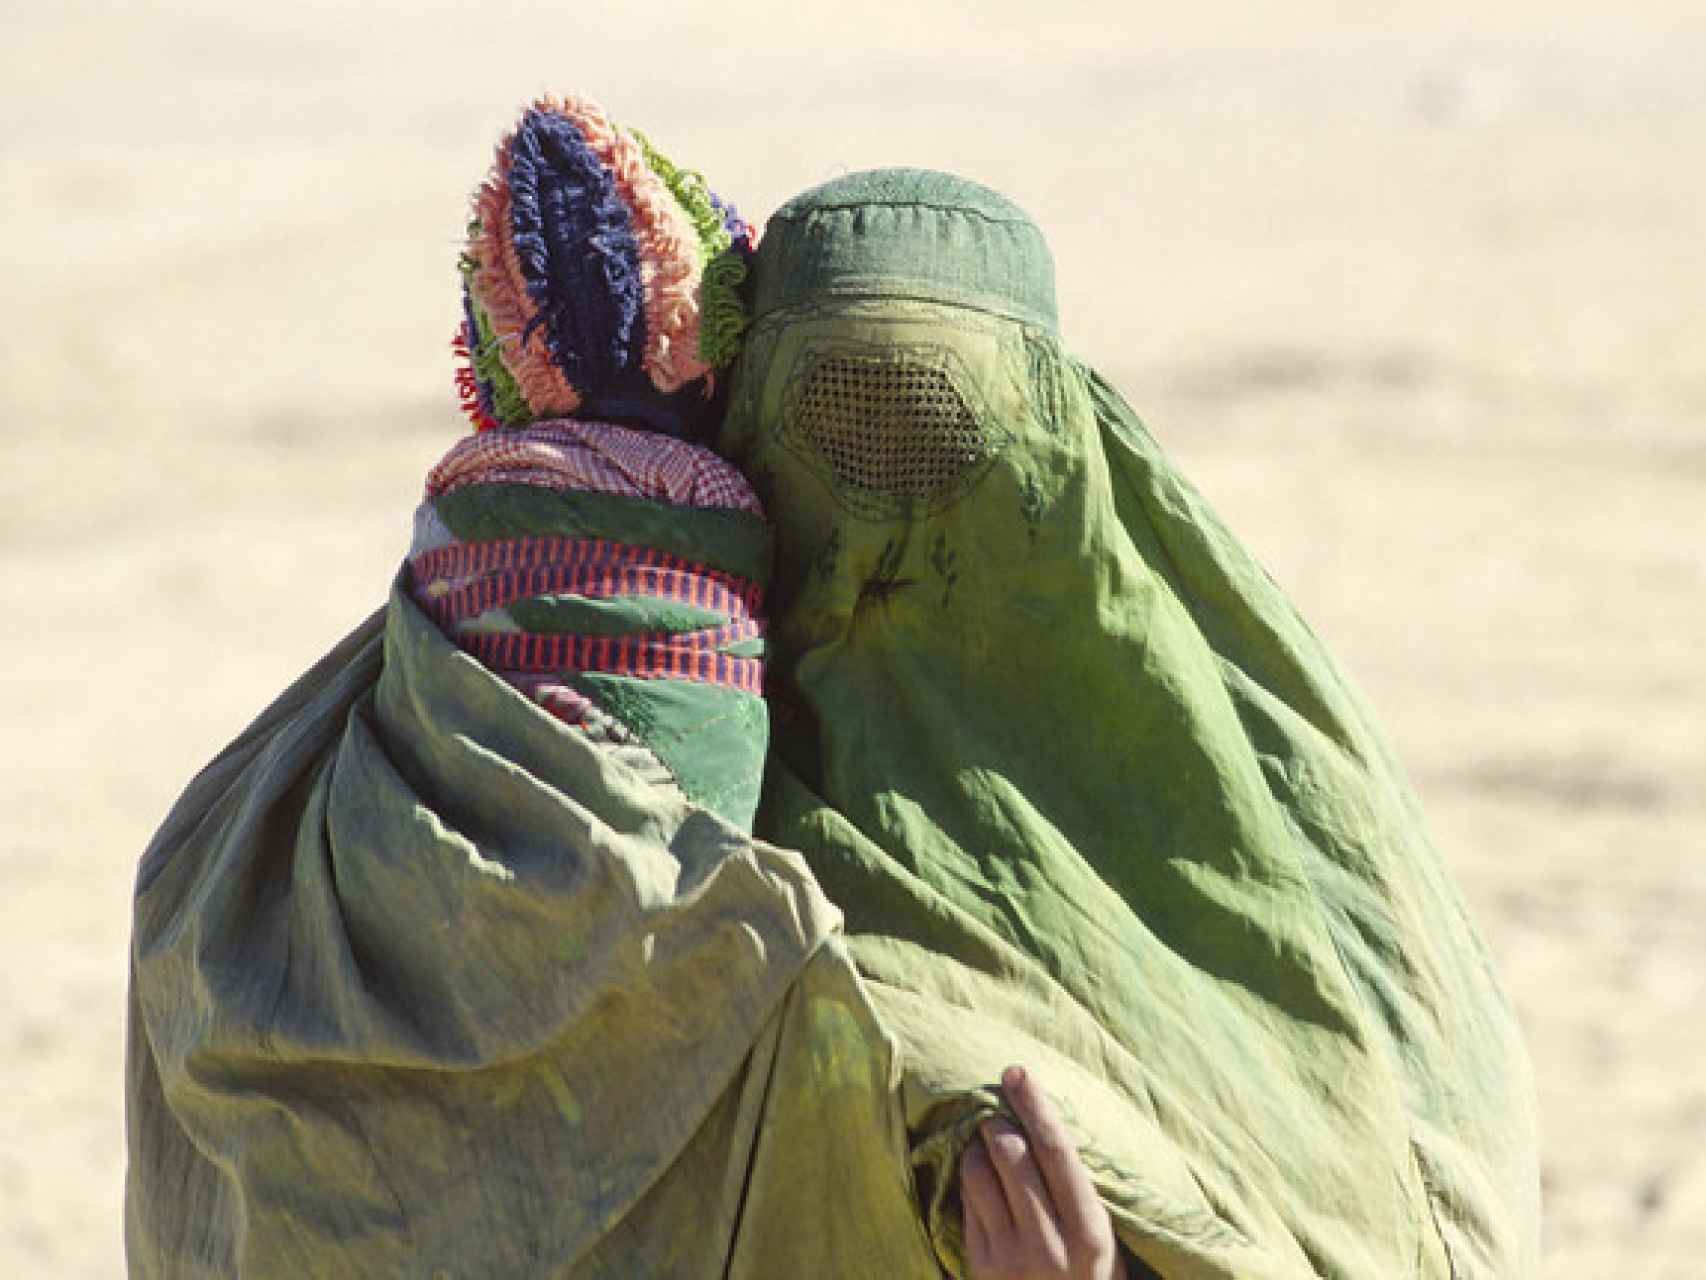 Dos mujeres con burka